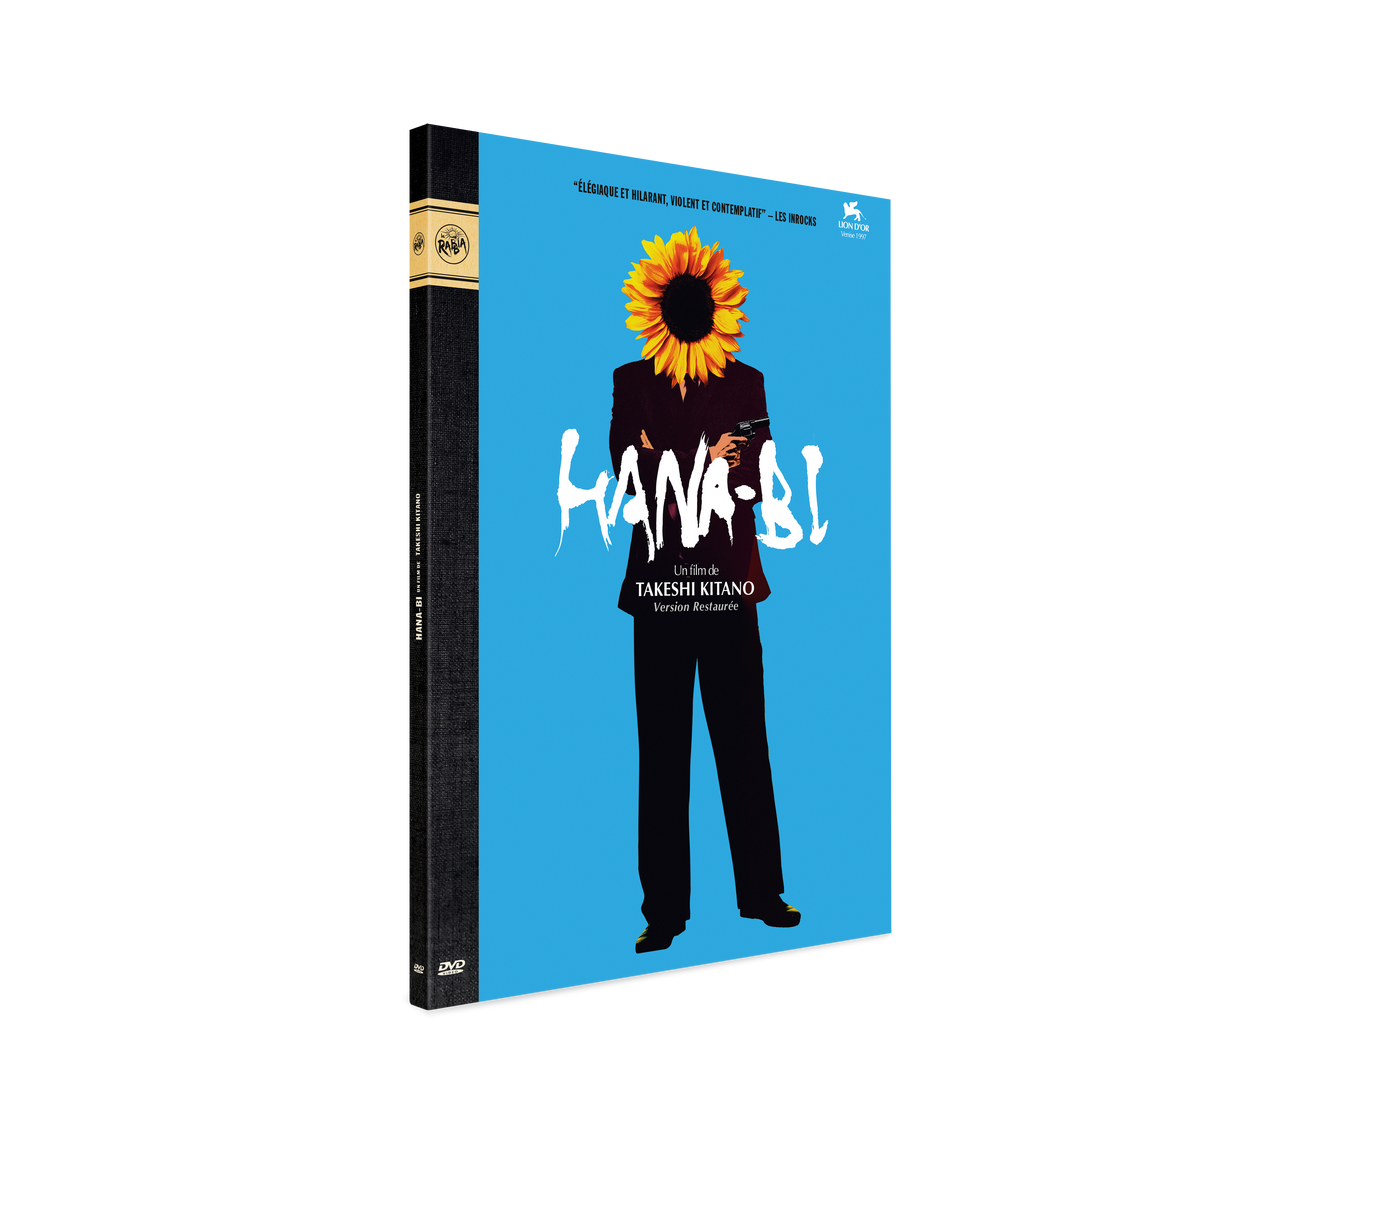 DVD Digipack "Hana-Bi"